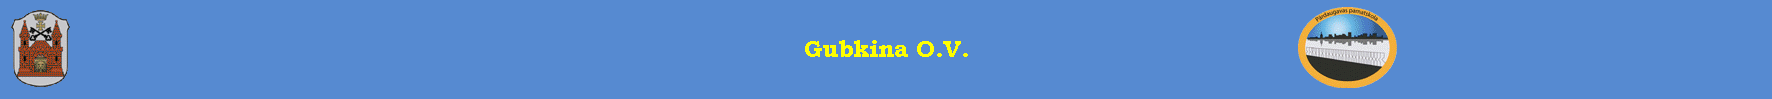 Gubkina O.V.